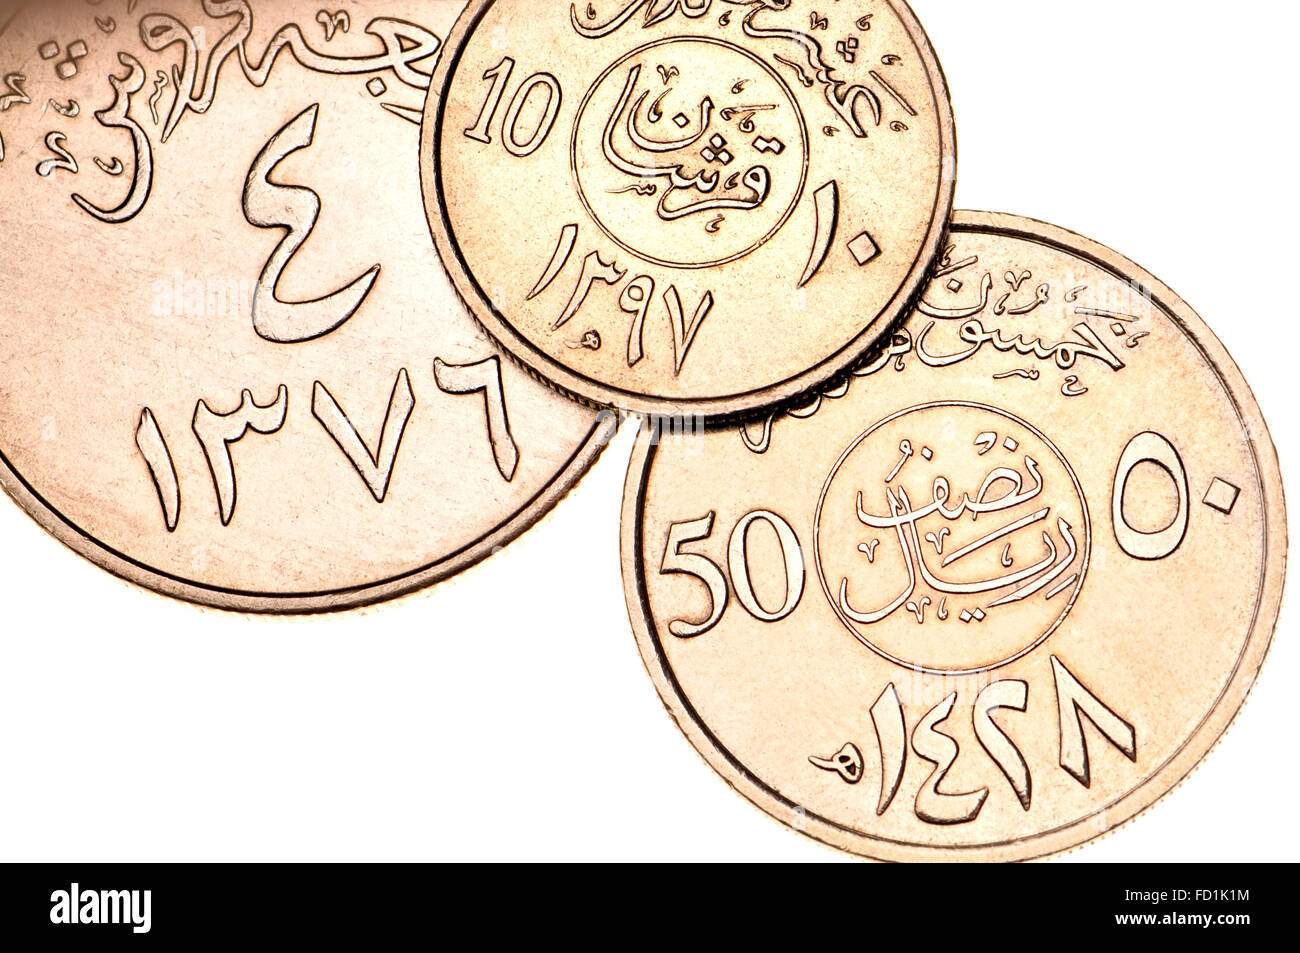 Münzen von Saudi Arabien arabische Schrift und Symbole in östliche arabische Schrift und Termine im islamischen Kalender zeigen Stockfoto